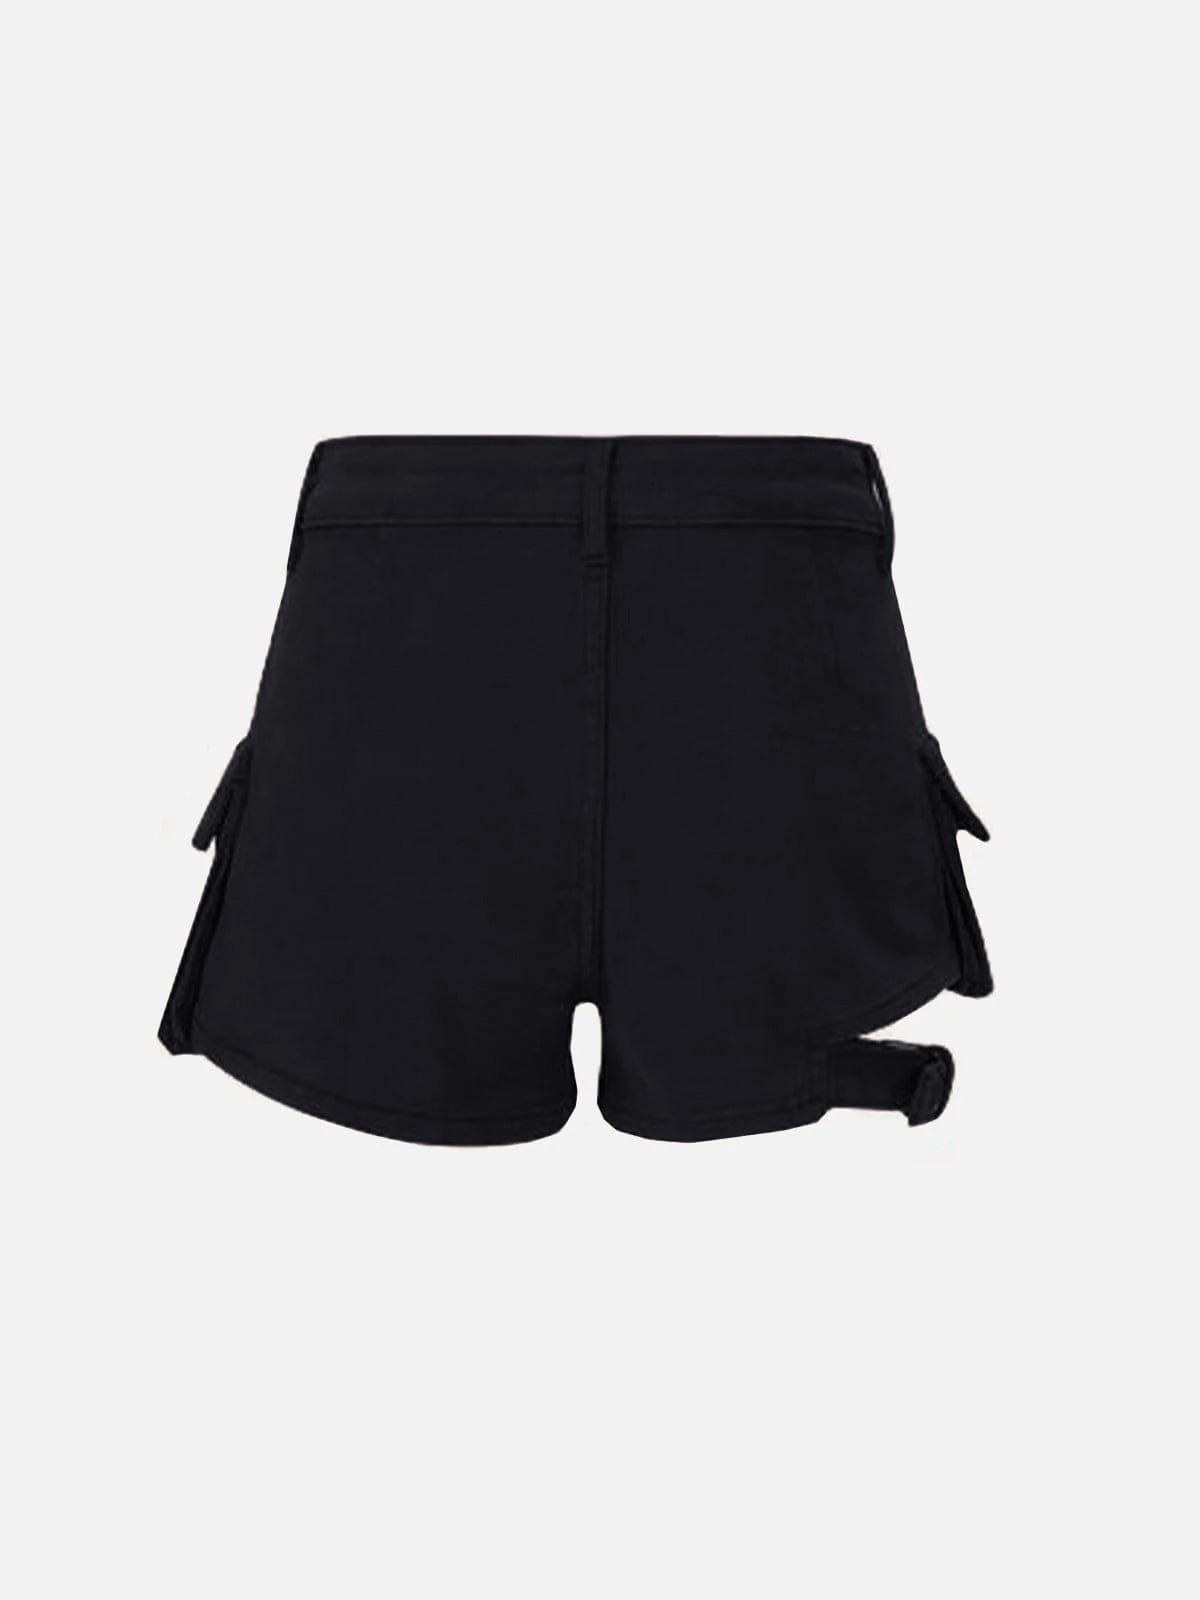 NEV Multi-Pocket Strappy Shorts